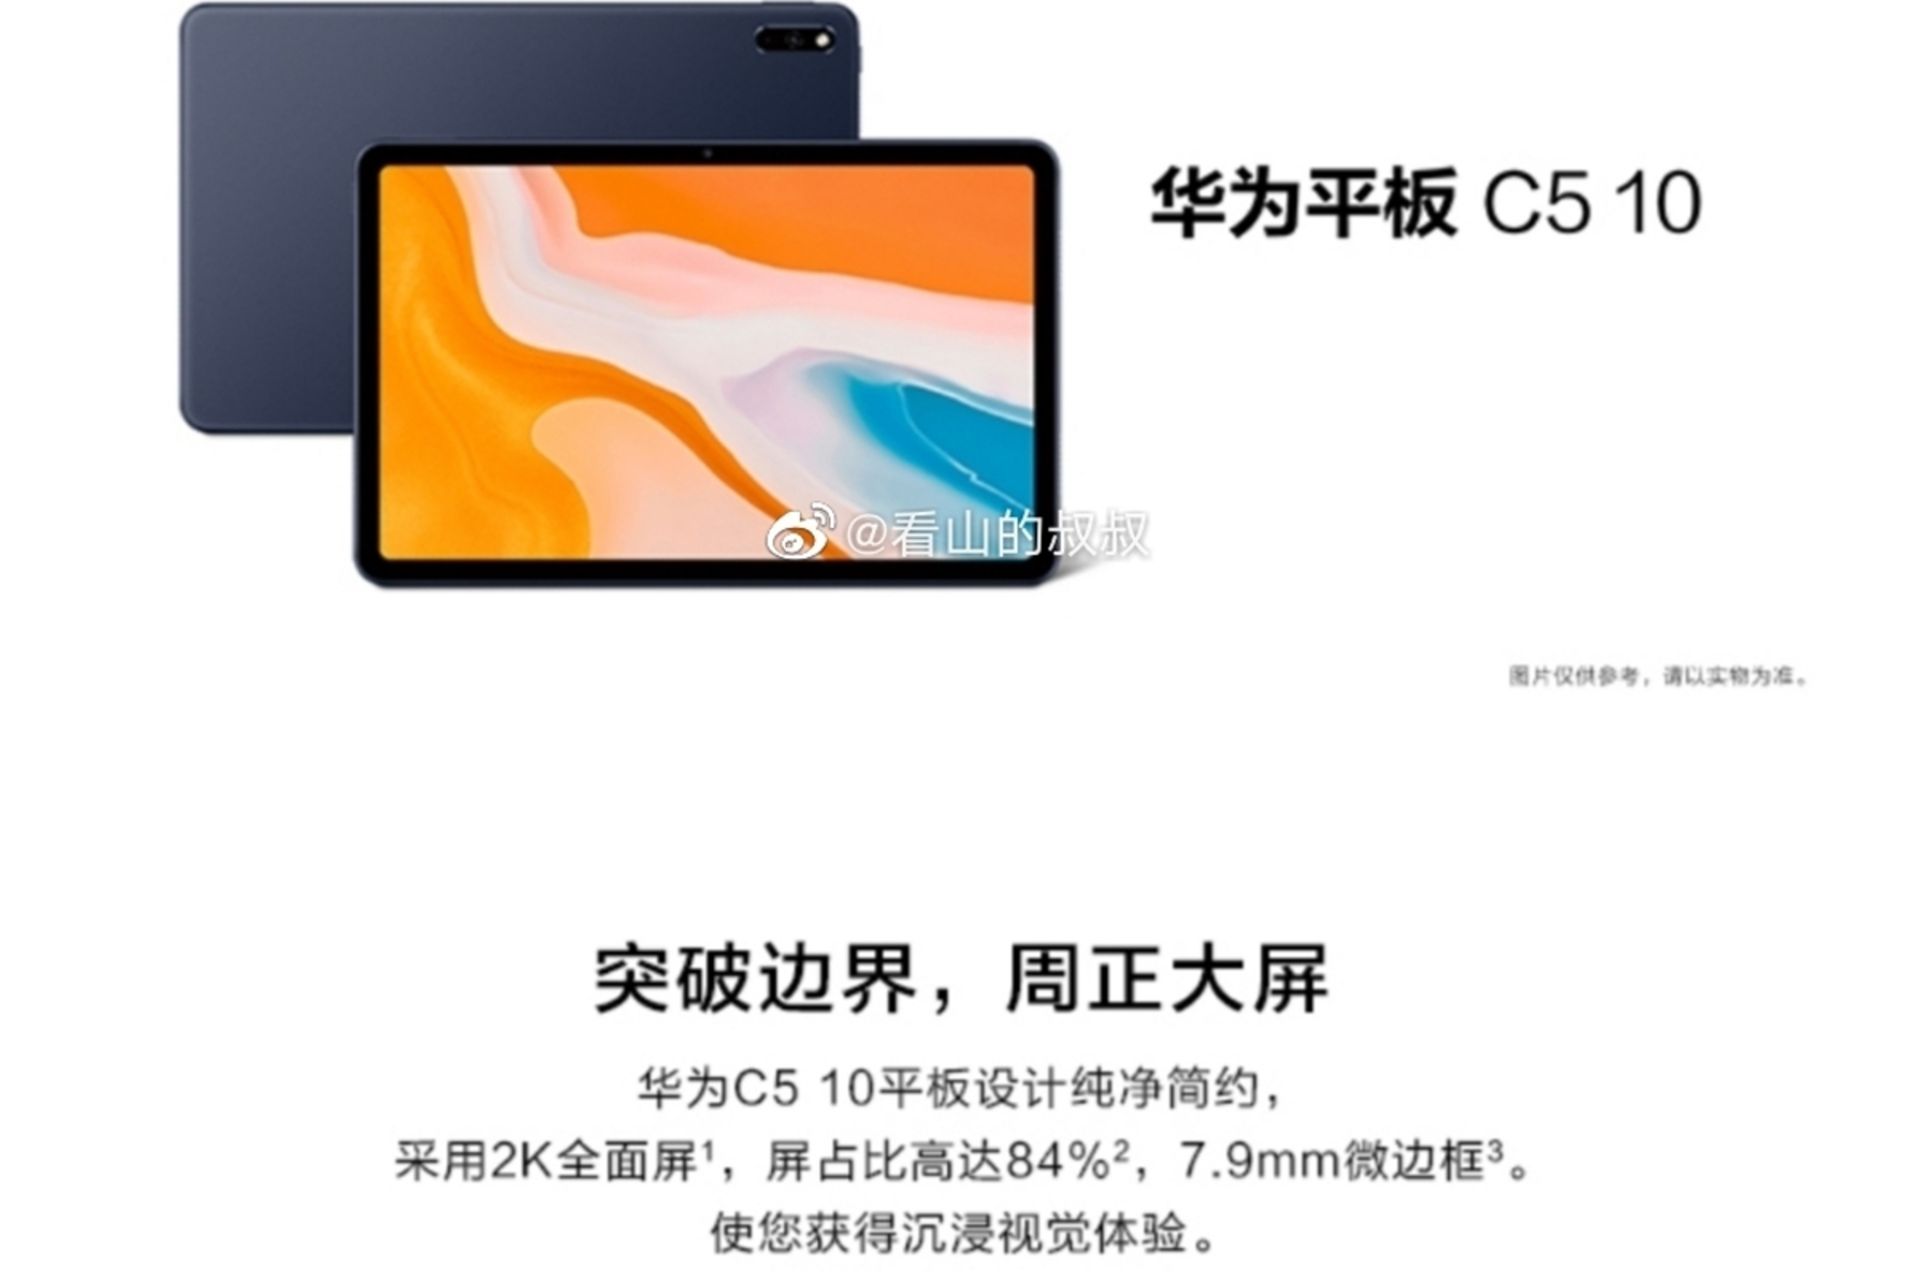 پنل پشت و جلو تبلت هواوی Huawei Tablet C5 10 رنگ مشکی